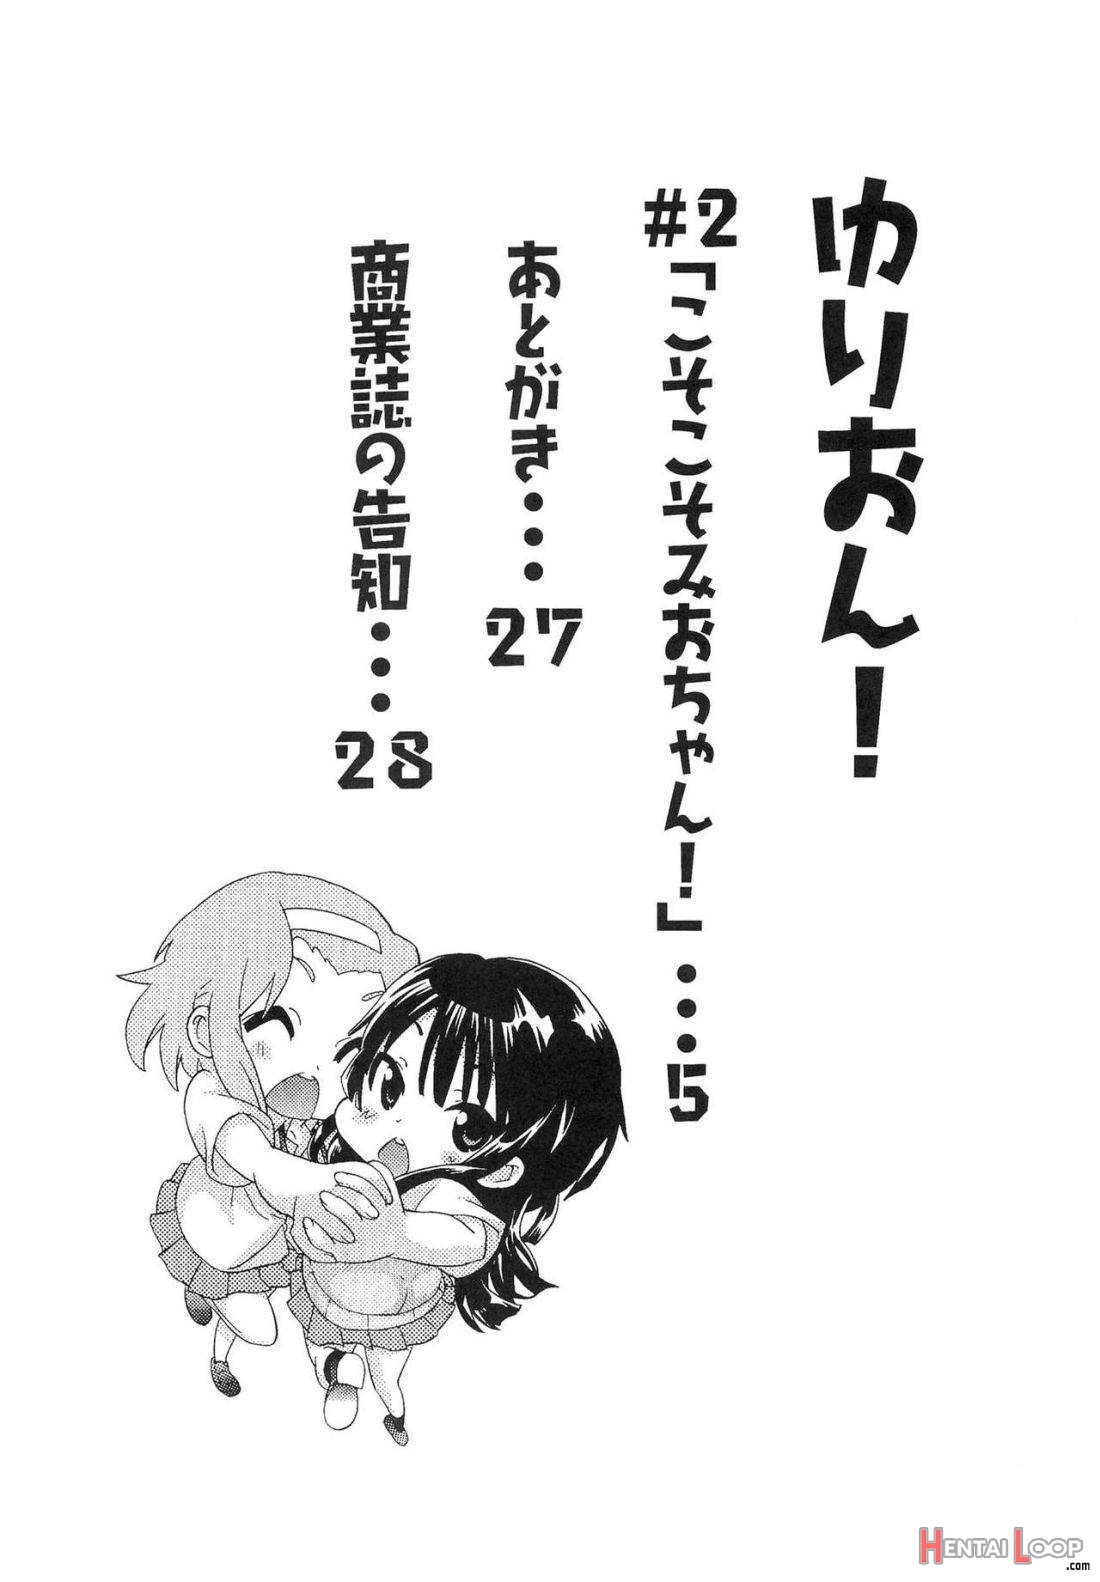 Yuri-on! #2 “kosokoso Mio-chan!” page 2